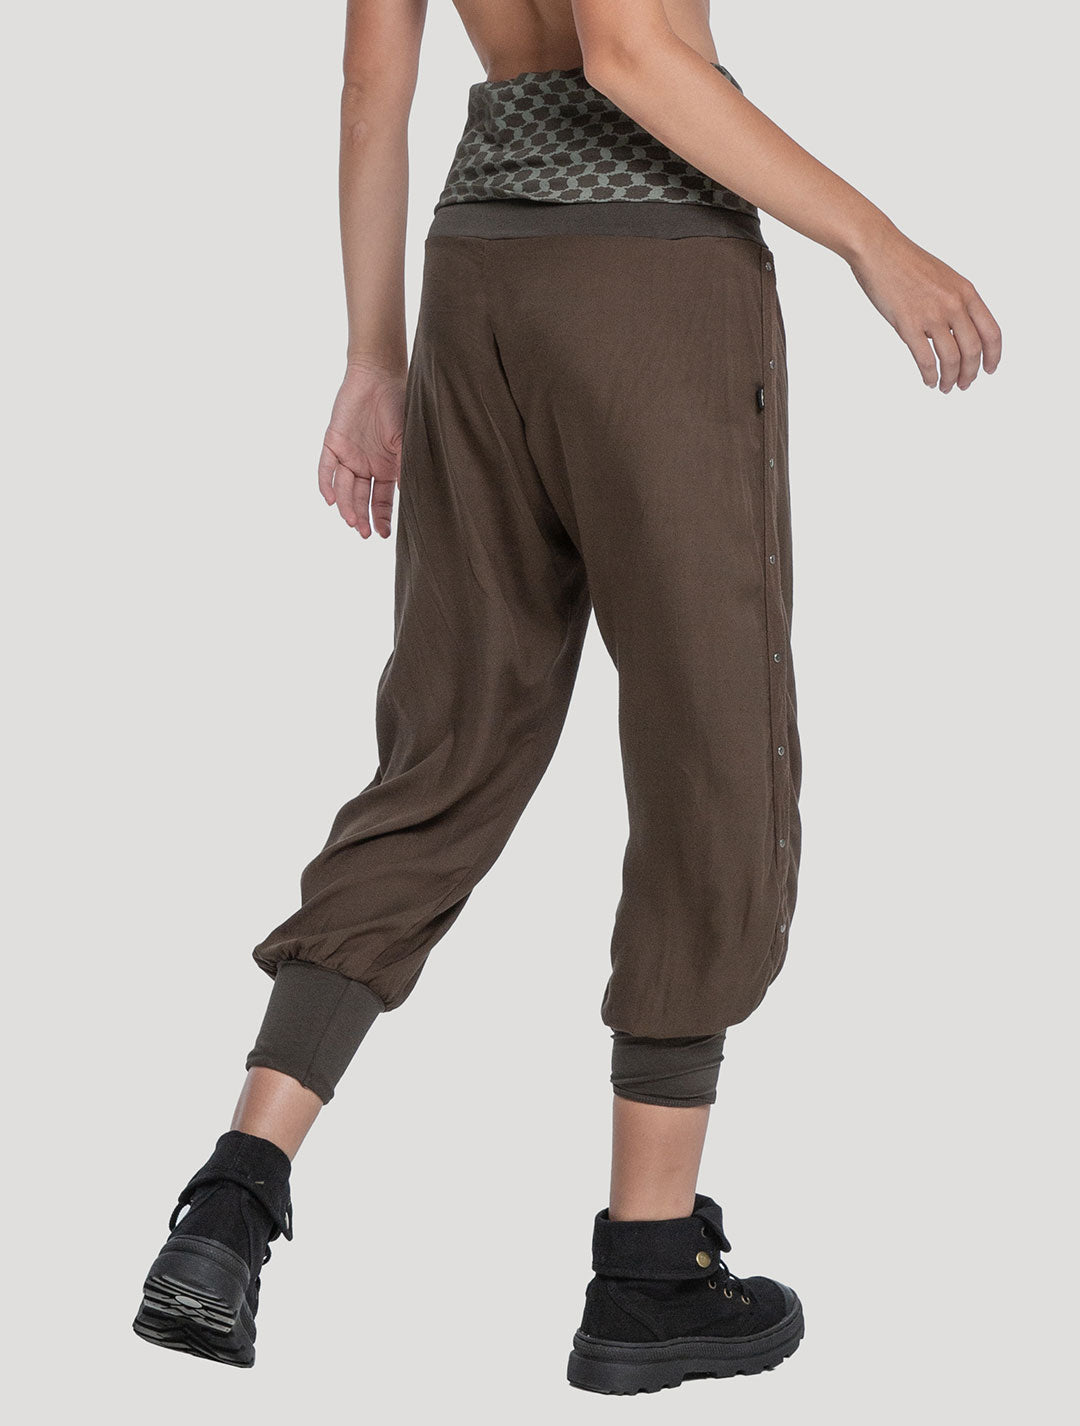 Girls Hareem Alibaba Leggings Plain Baggy Kids Summer Dance Pants Harem  Trousers | eBay